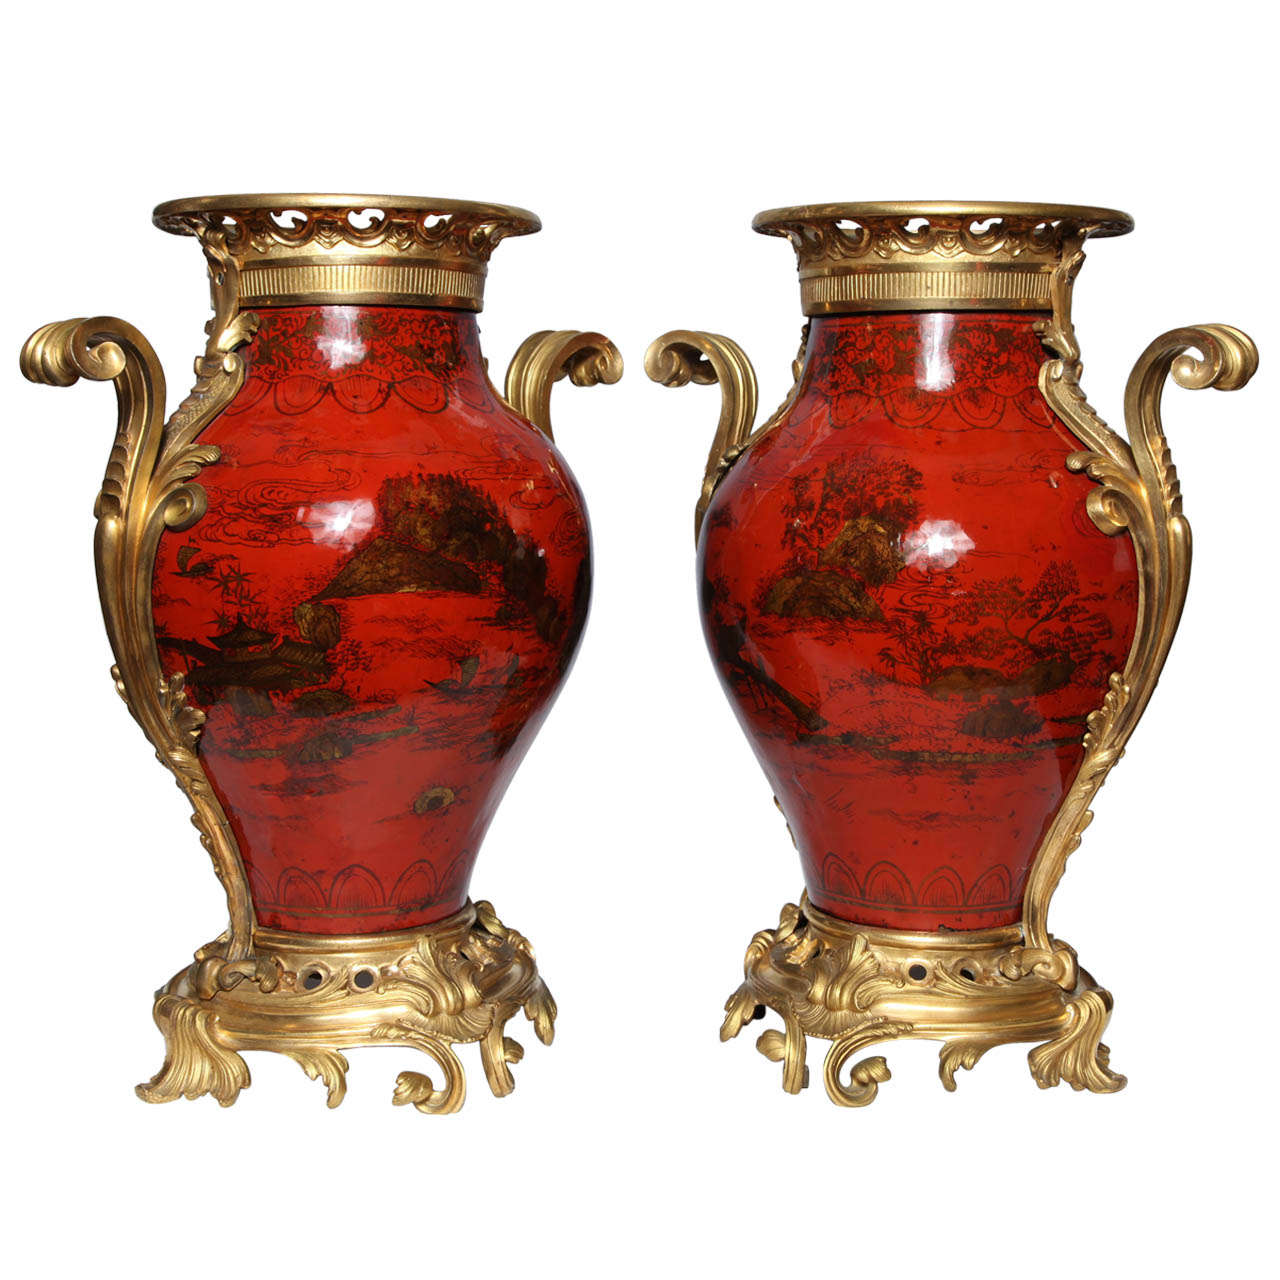 Großes Paar französischer Vasen aus rotem Lack, Chinoiserie-Dekor und Goldbronze-Montierung